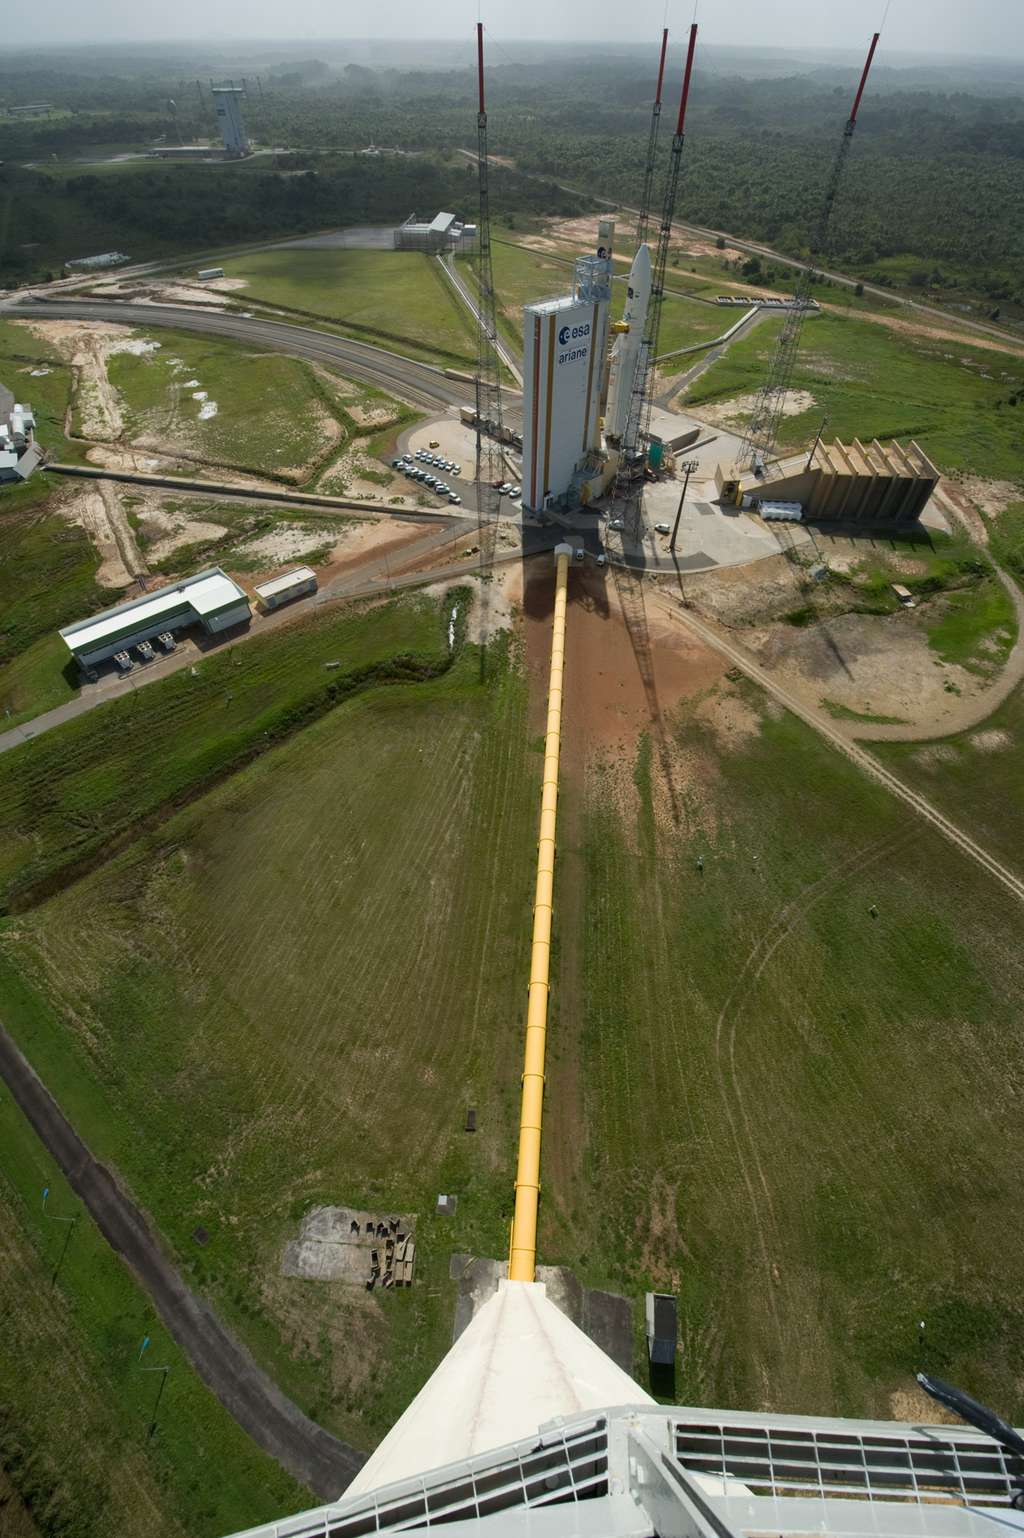 En plus des pas de tir de Vega (en haut et à gauche), d'Ariane 5 (au premier plan) et du Soyouz russe, le Centre spatial guyanais va devoir en construire un pour Ariane 6. La photo est prise depuis le réservoir d'où sera déversée de l'eau (dans la canalisation jaune), au moment du lancement, pour atténuer les vibrations sonores au moment du décollage. © Esa, S. Corvaja